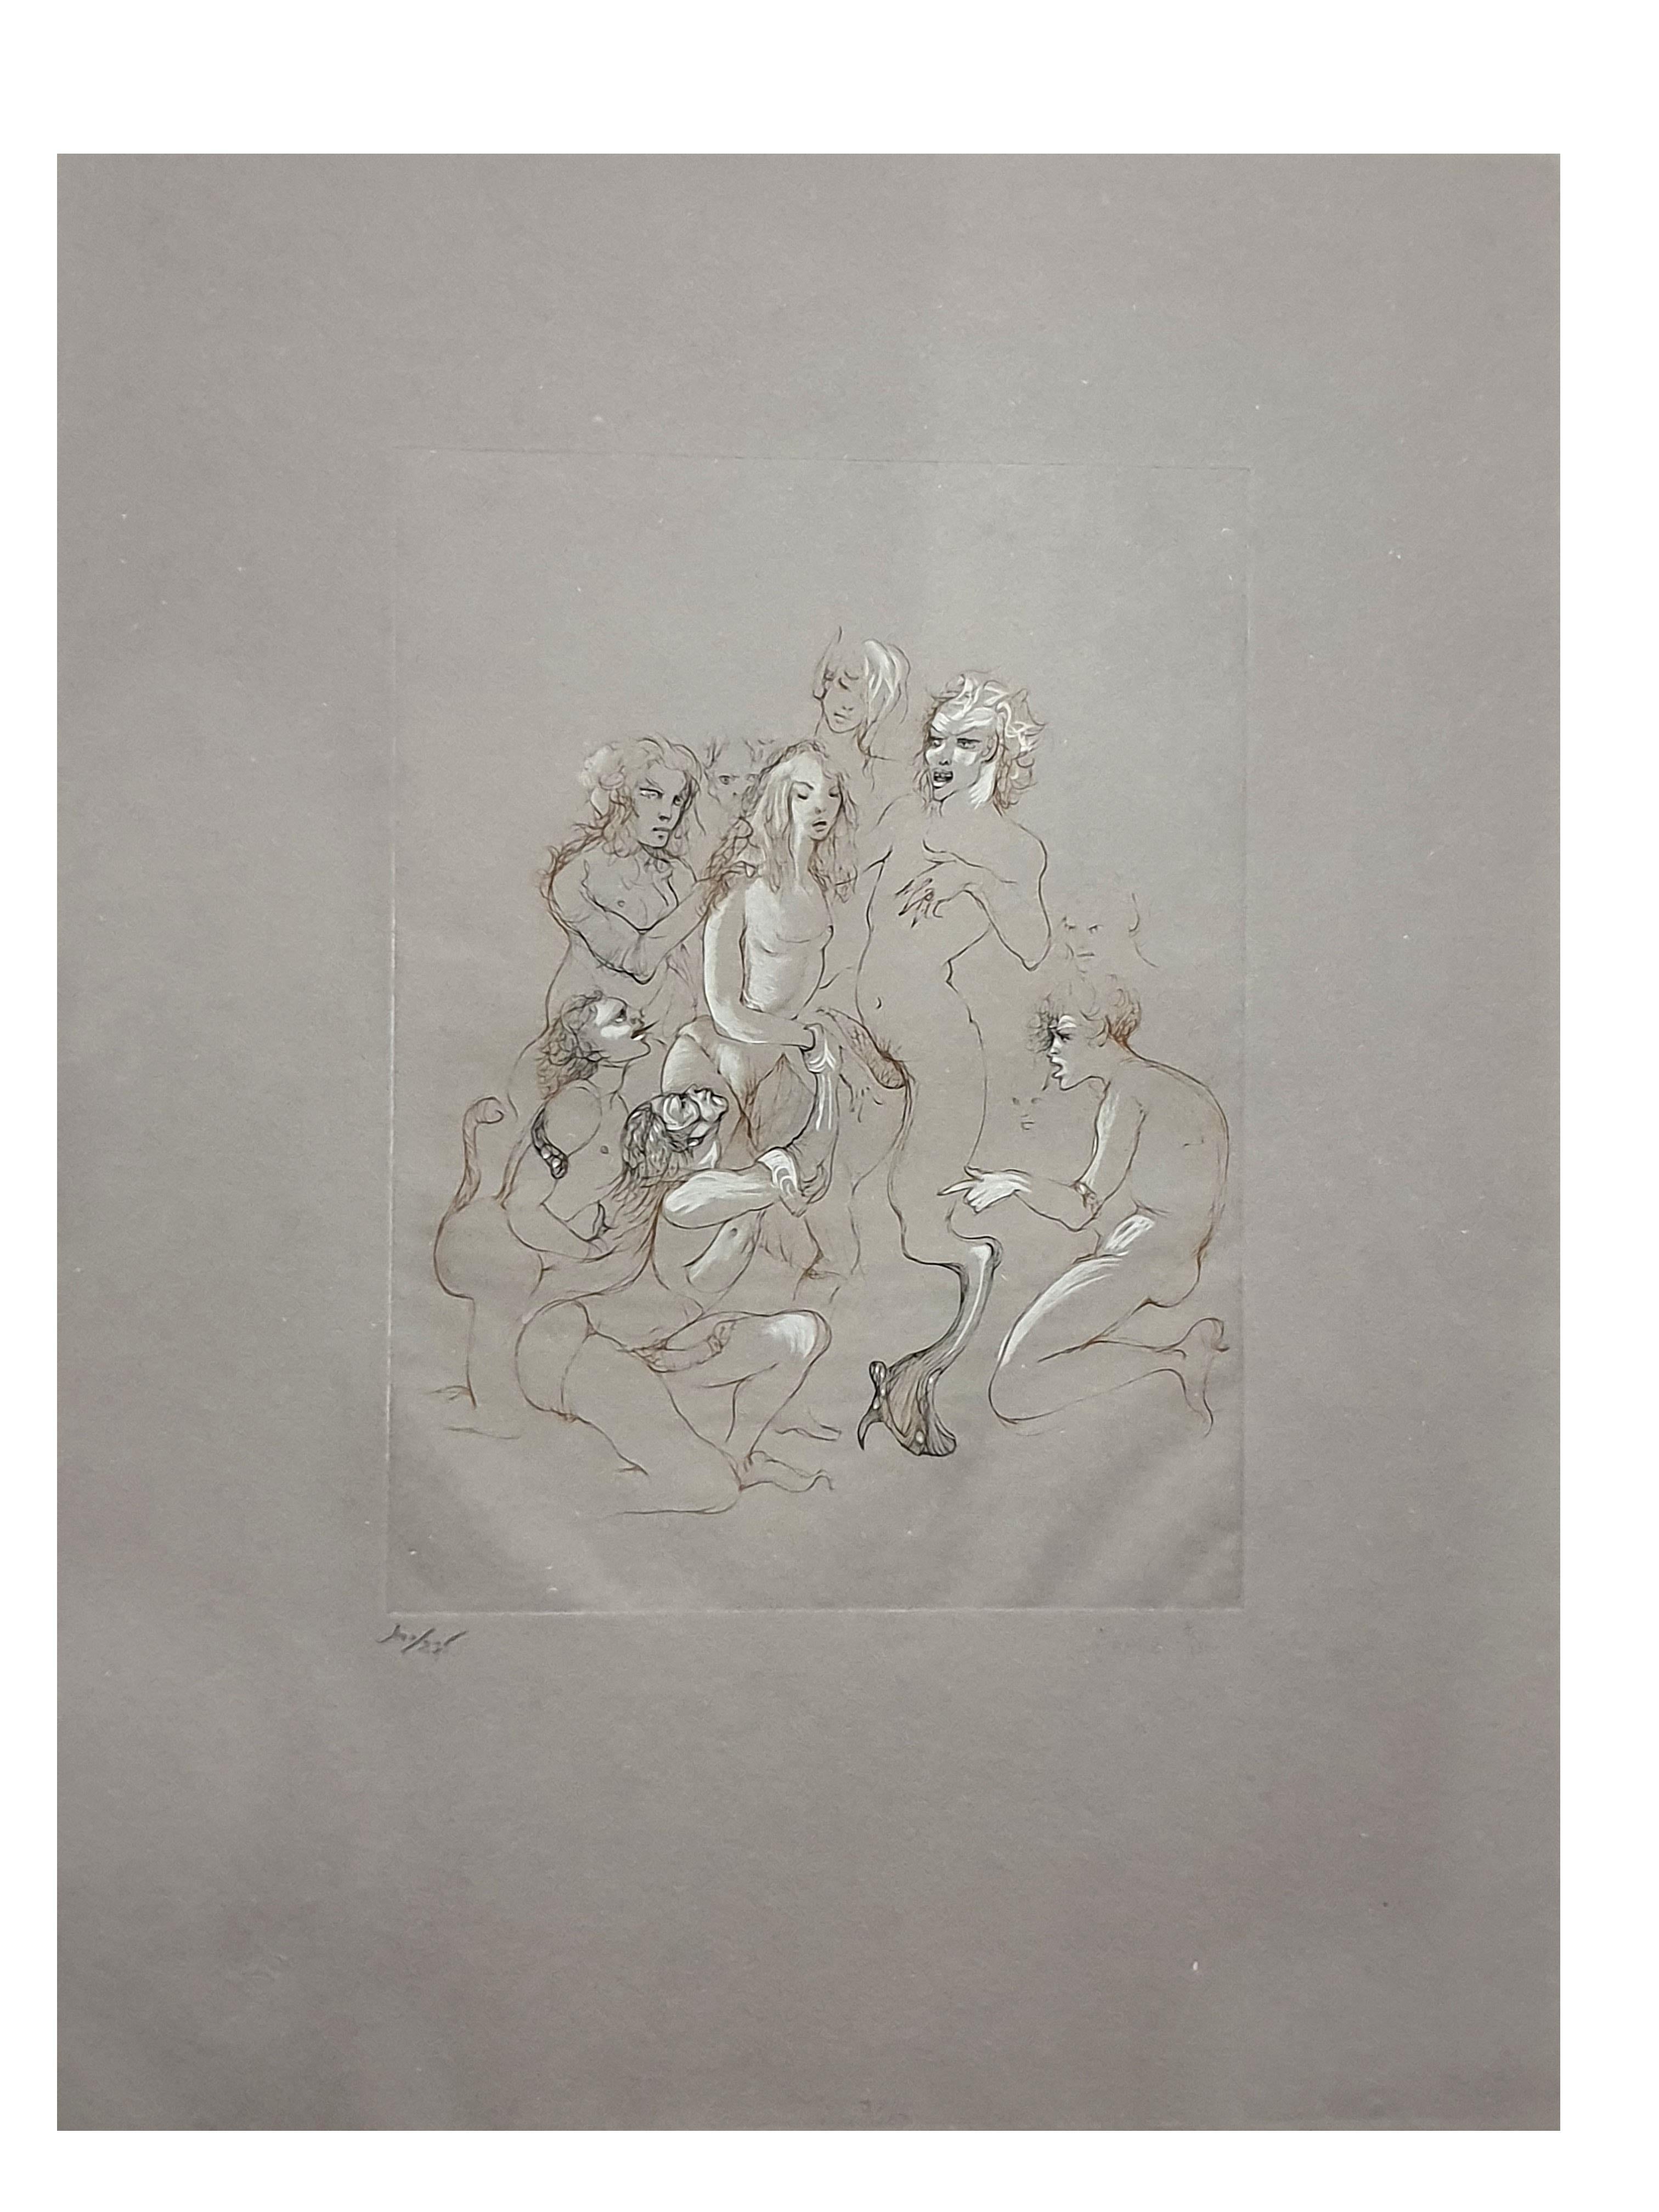 Originale, handsignierte Lithographie von Orgy von Orchidee Fini – Print von Leonor Fini